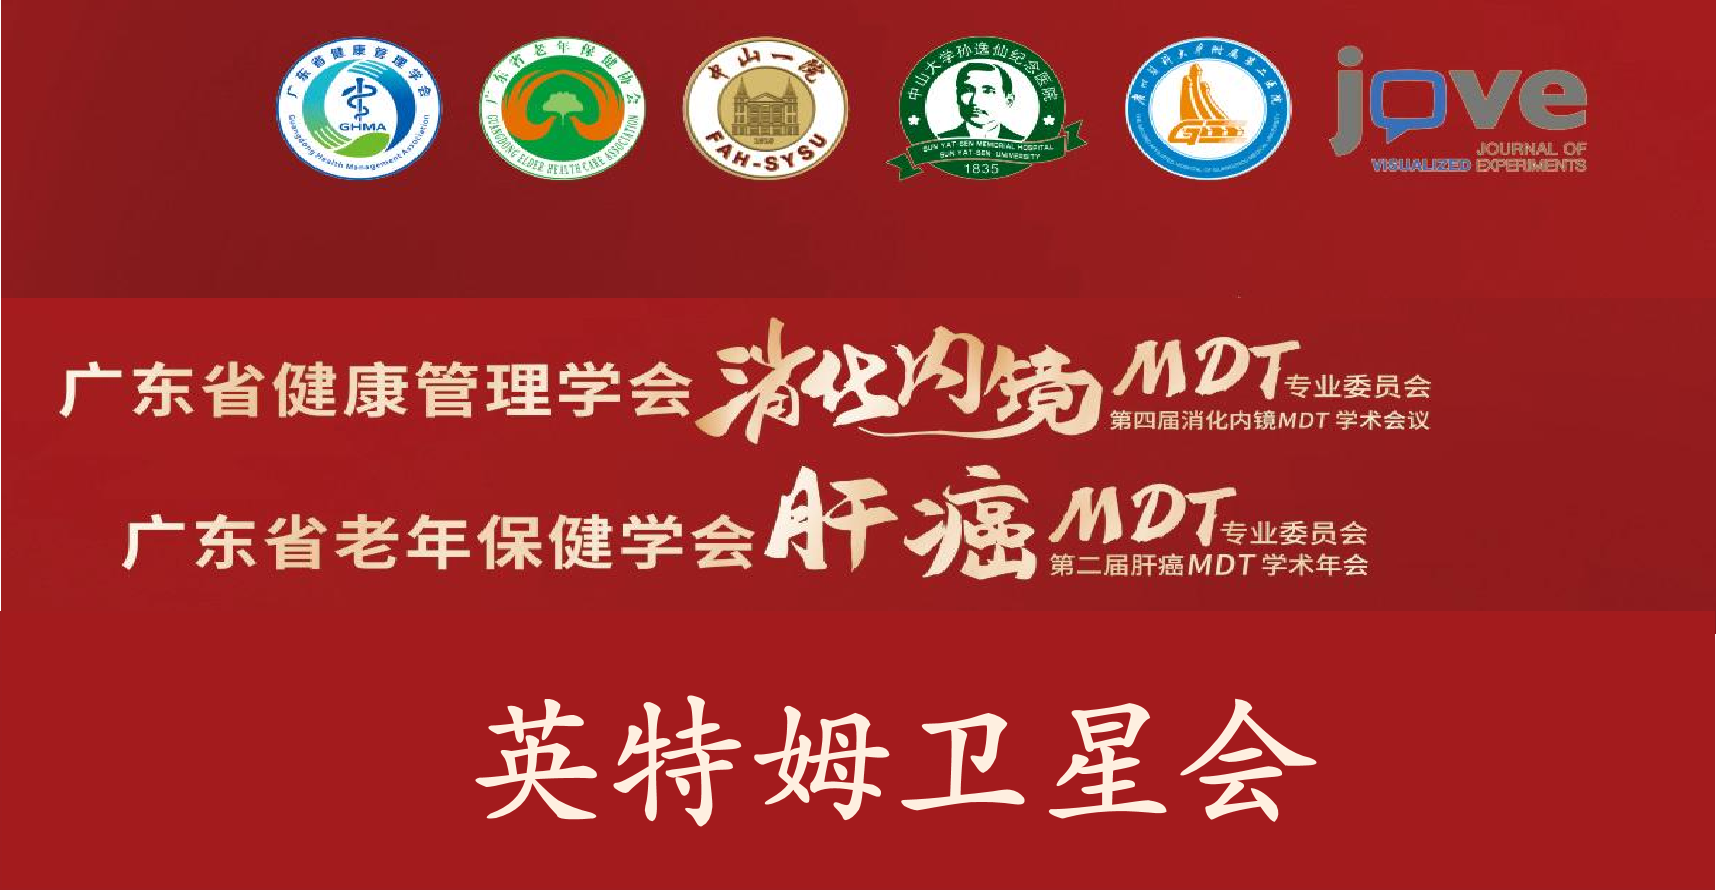 广东省老年保健学会肝癌MDT专业委员会第二届肝癌MDT学术年会-英特姆卫星会